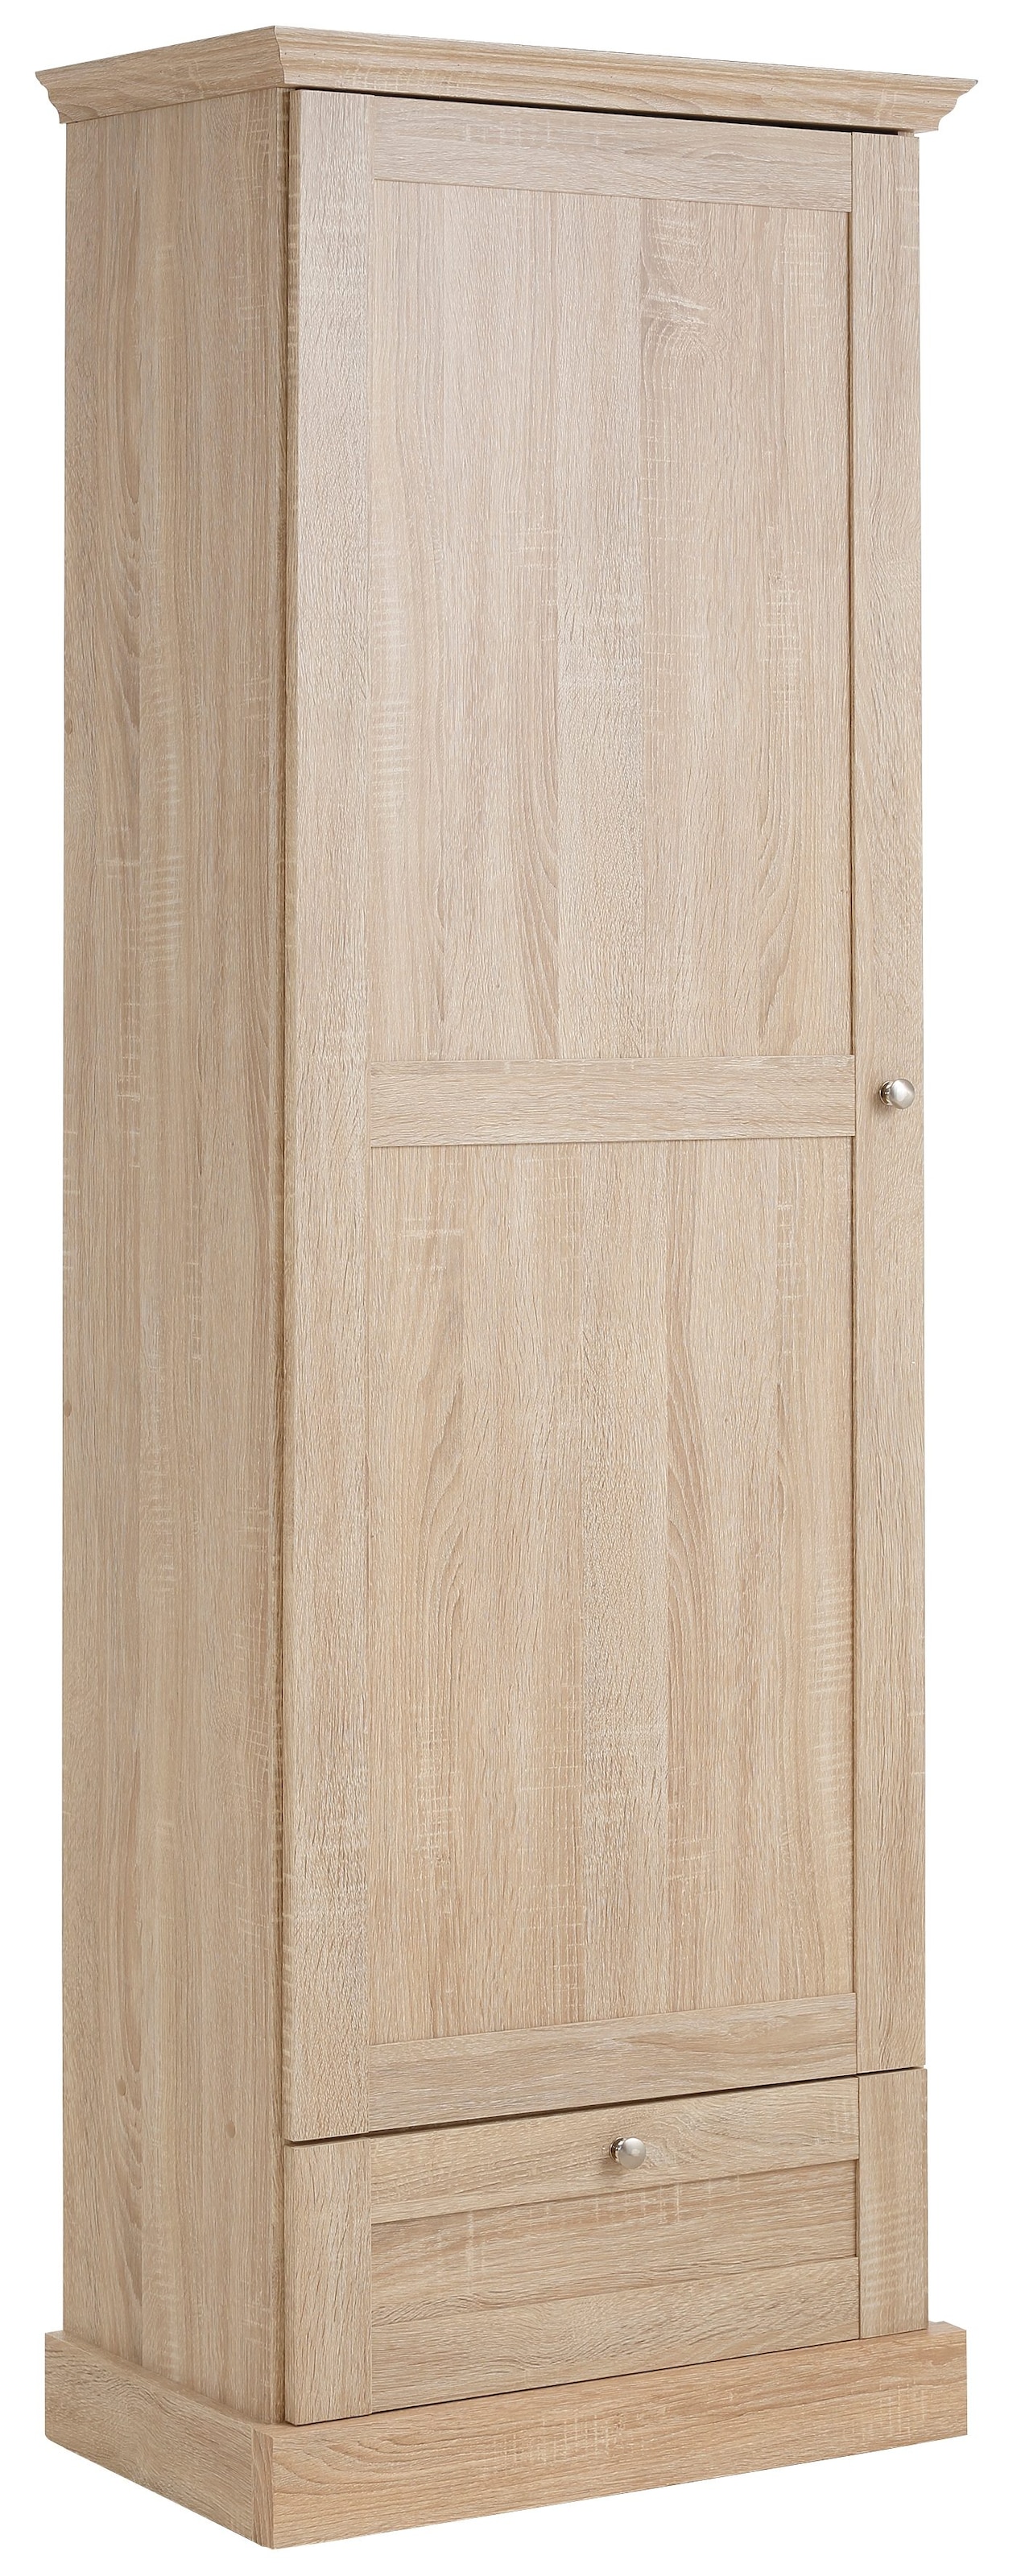 Home affaire Garderobenschrank »Binz«, mit Höhe 180 vielen auf kaufen schönen Holzoptik, mit cm Stauraummöglichkeiten, Rechnung einer